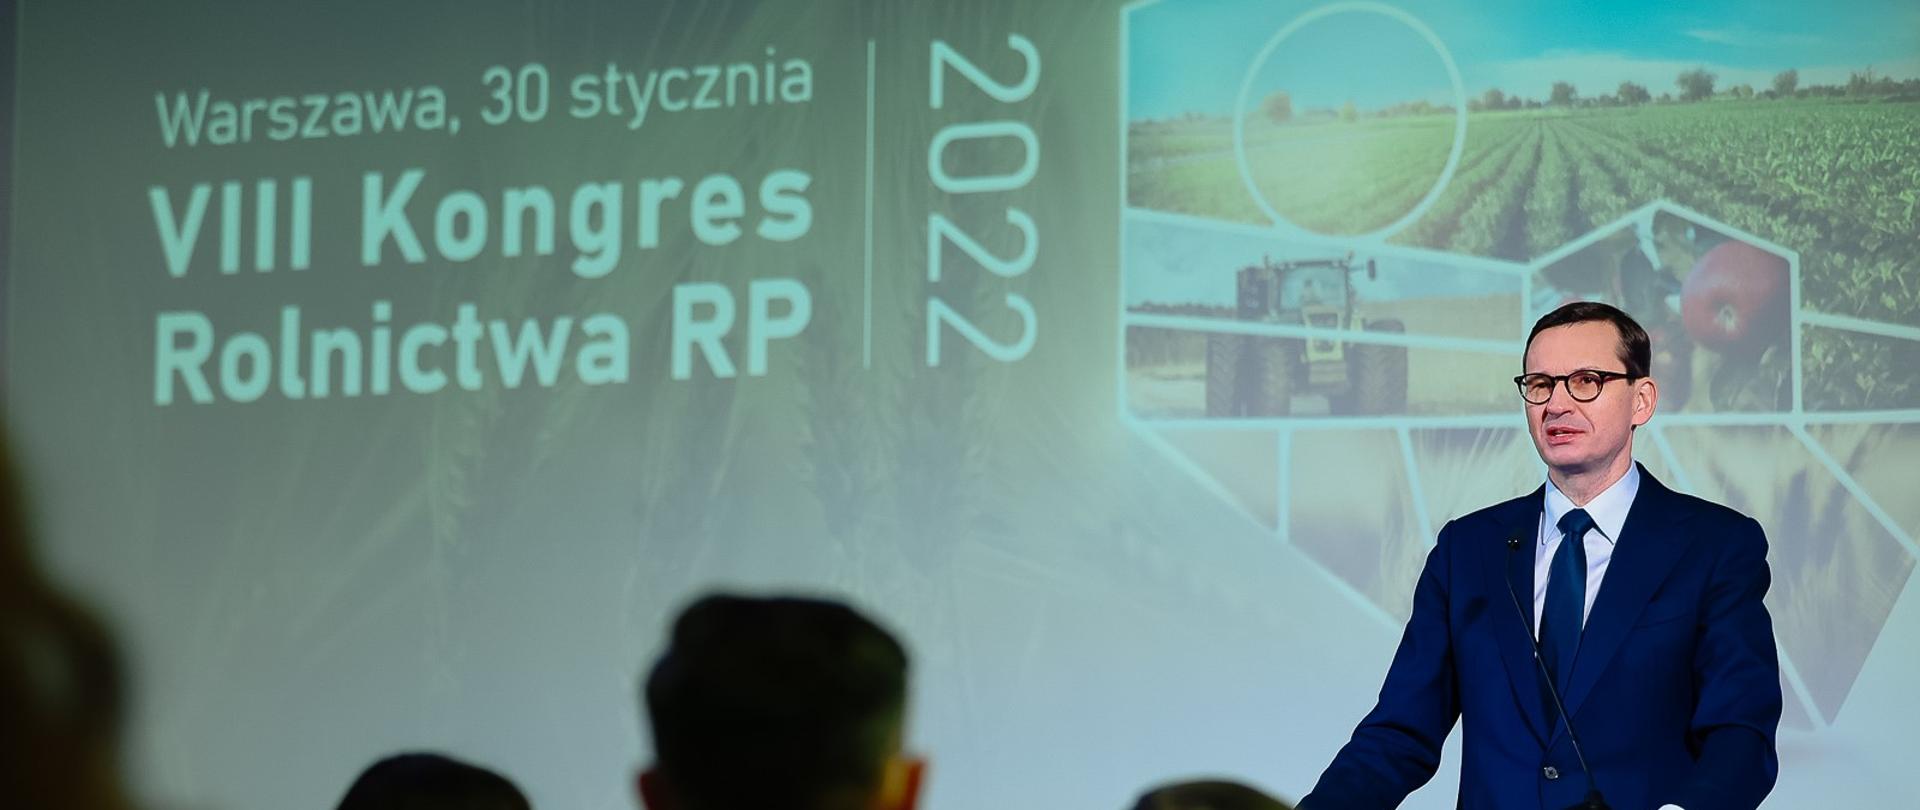 Premier Mateusz Morawiecki podczas wystąpienia na VIII Kongresie Rolnictwa RP 2022 r.w Warszawie